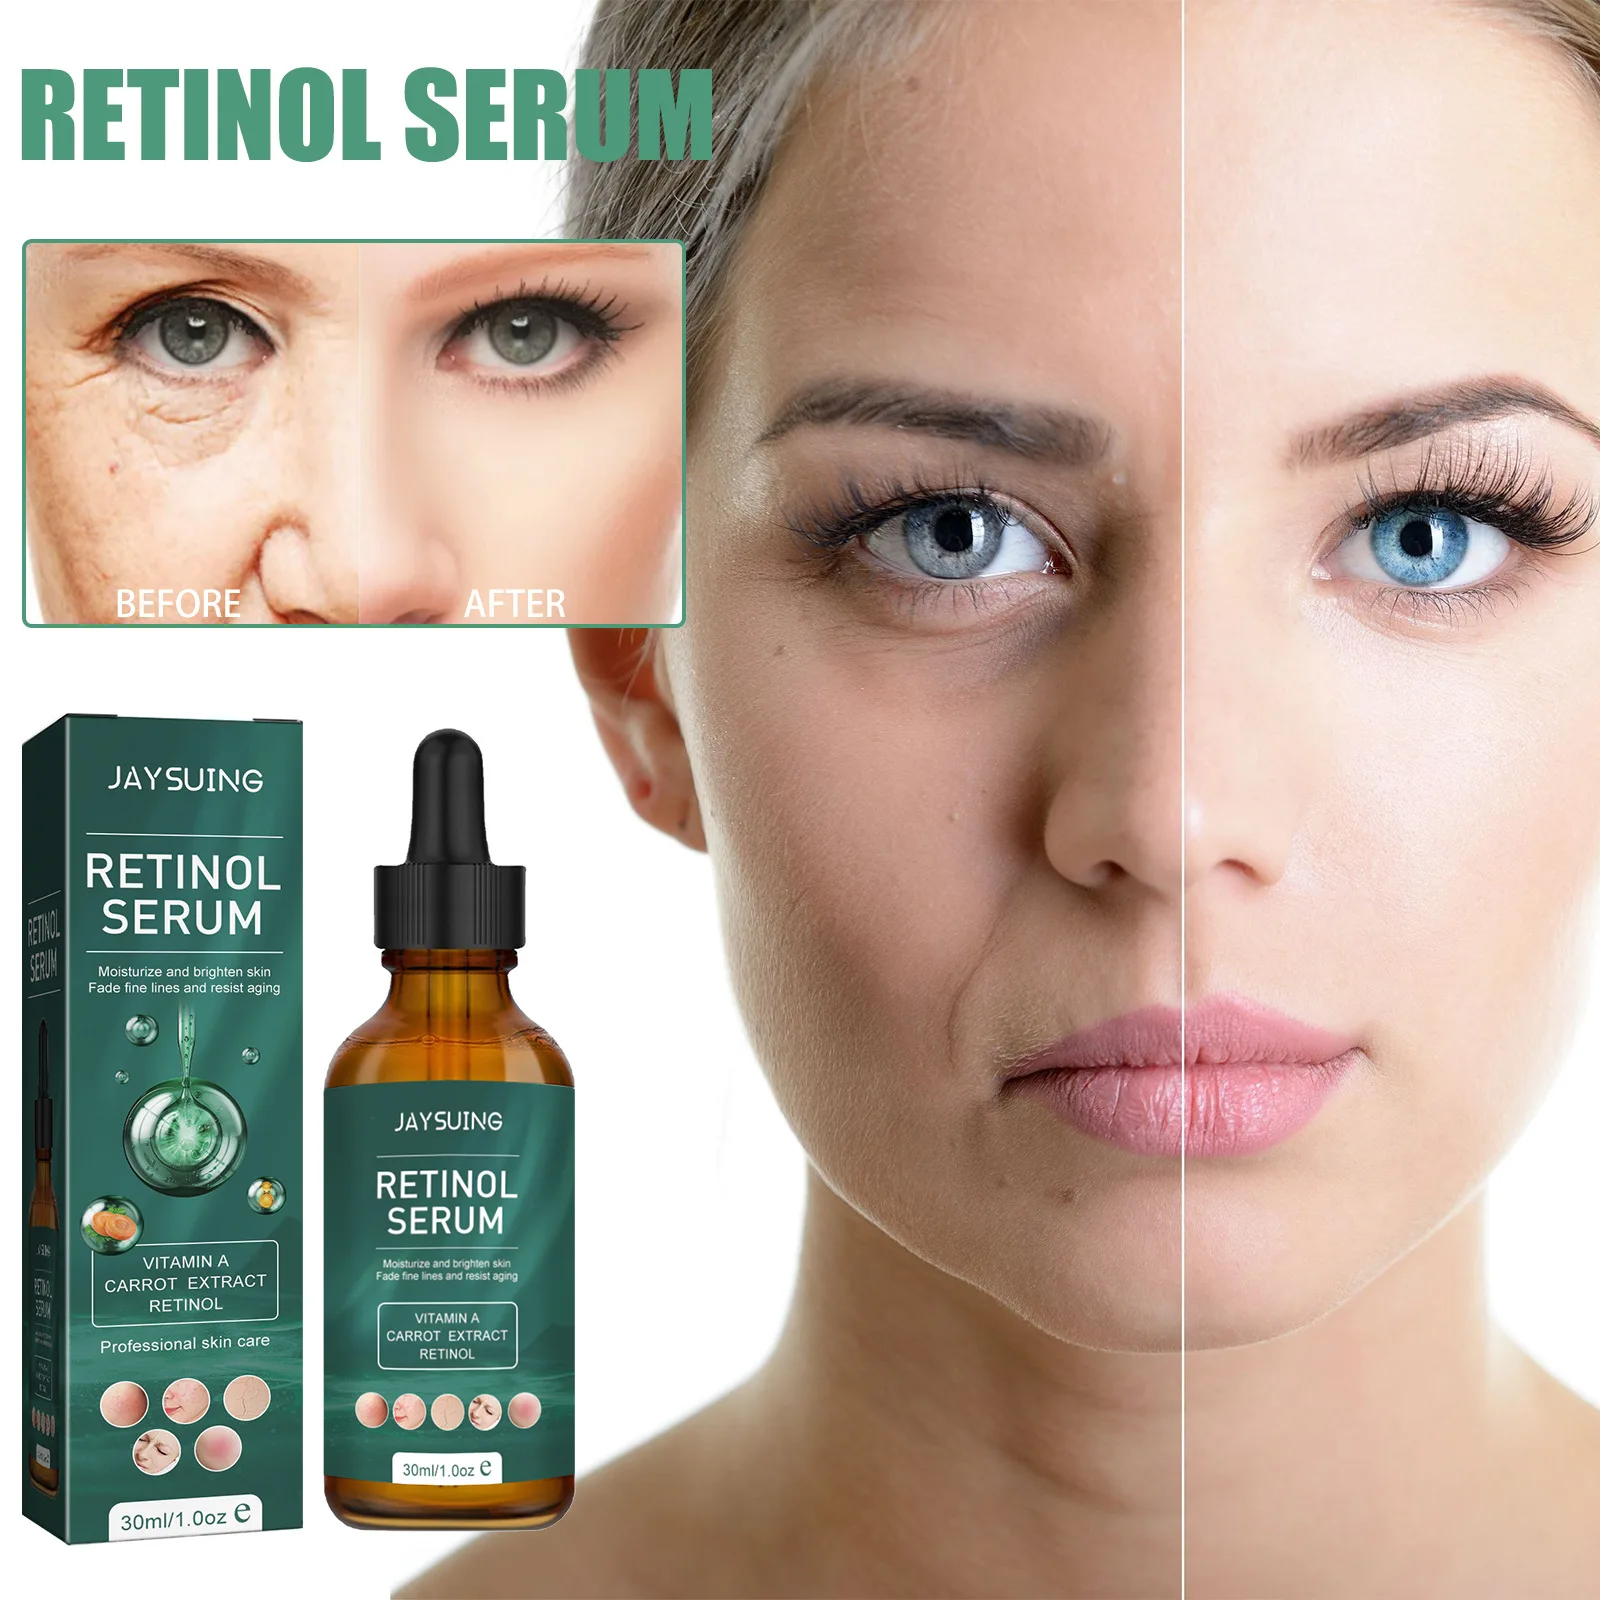 

Retinol Facial Serum Whitening Brightening Moisturizing Skin Care Shrink Pores Face Essence Anti Aging Lifting Firming Repairing